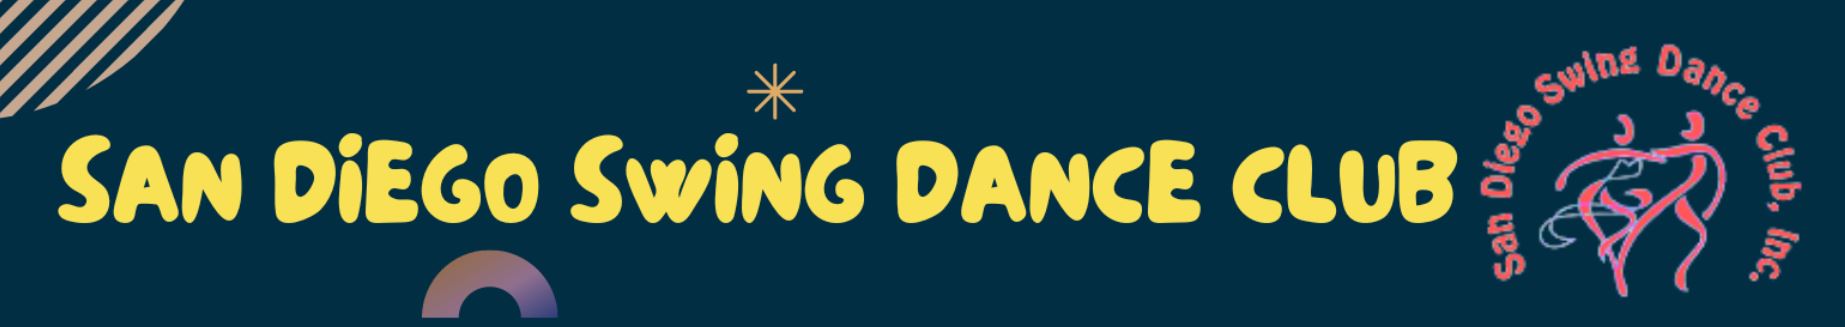 San Diego Swing Dance Club